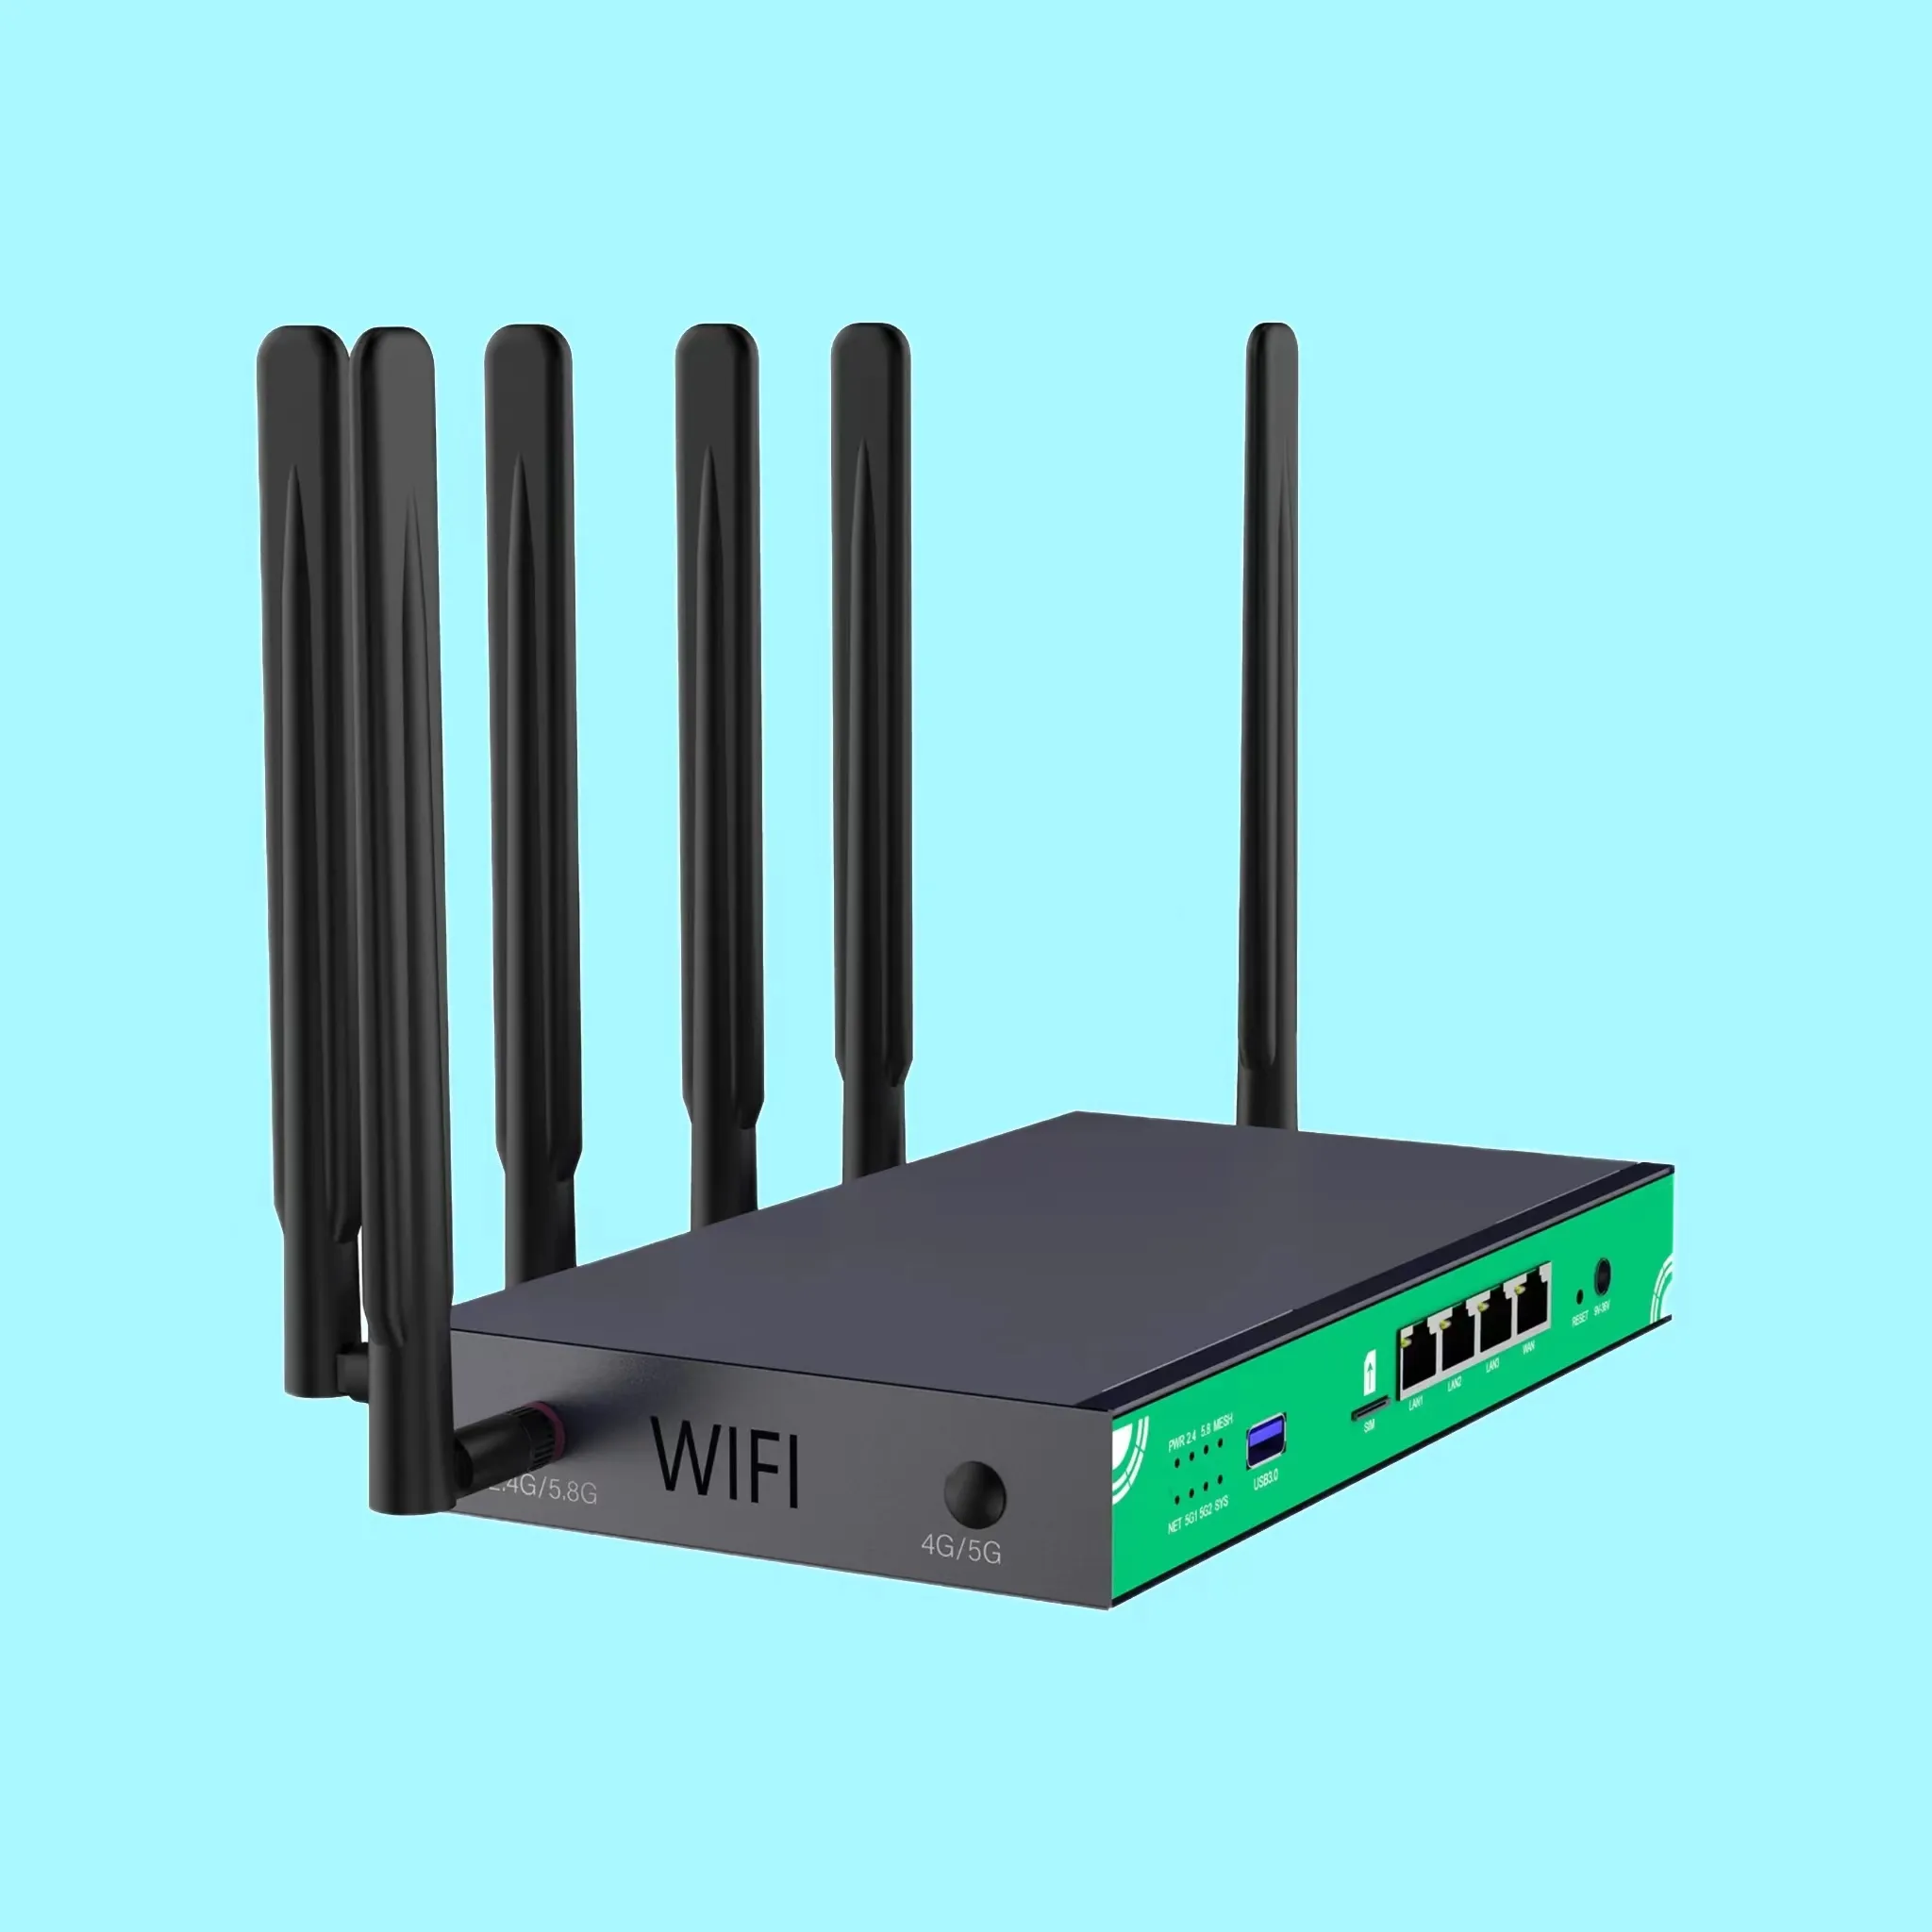 제조사에 의해 추천 HC851 wifi6 SIM 카드 5G 와이파이 라우터 공장 최저 가격 1000pcs 주문 무료 샘플 제공